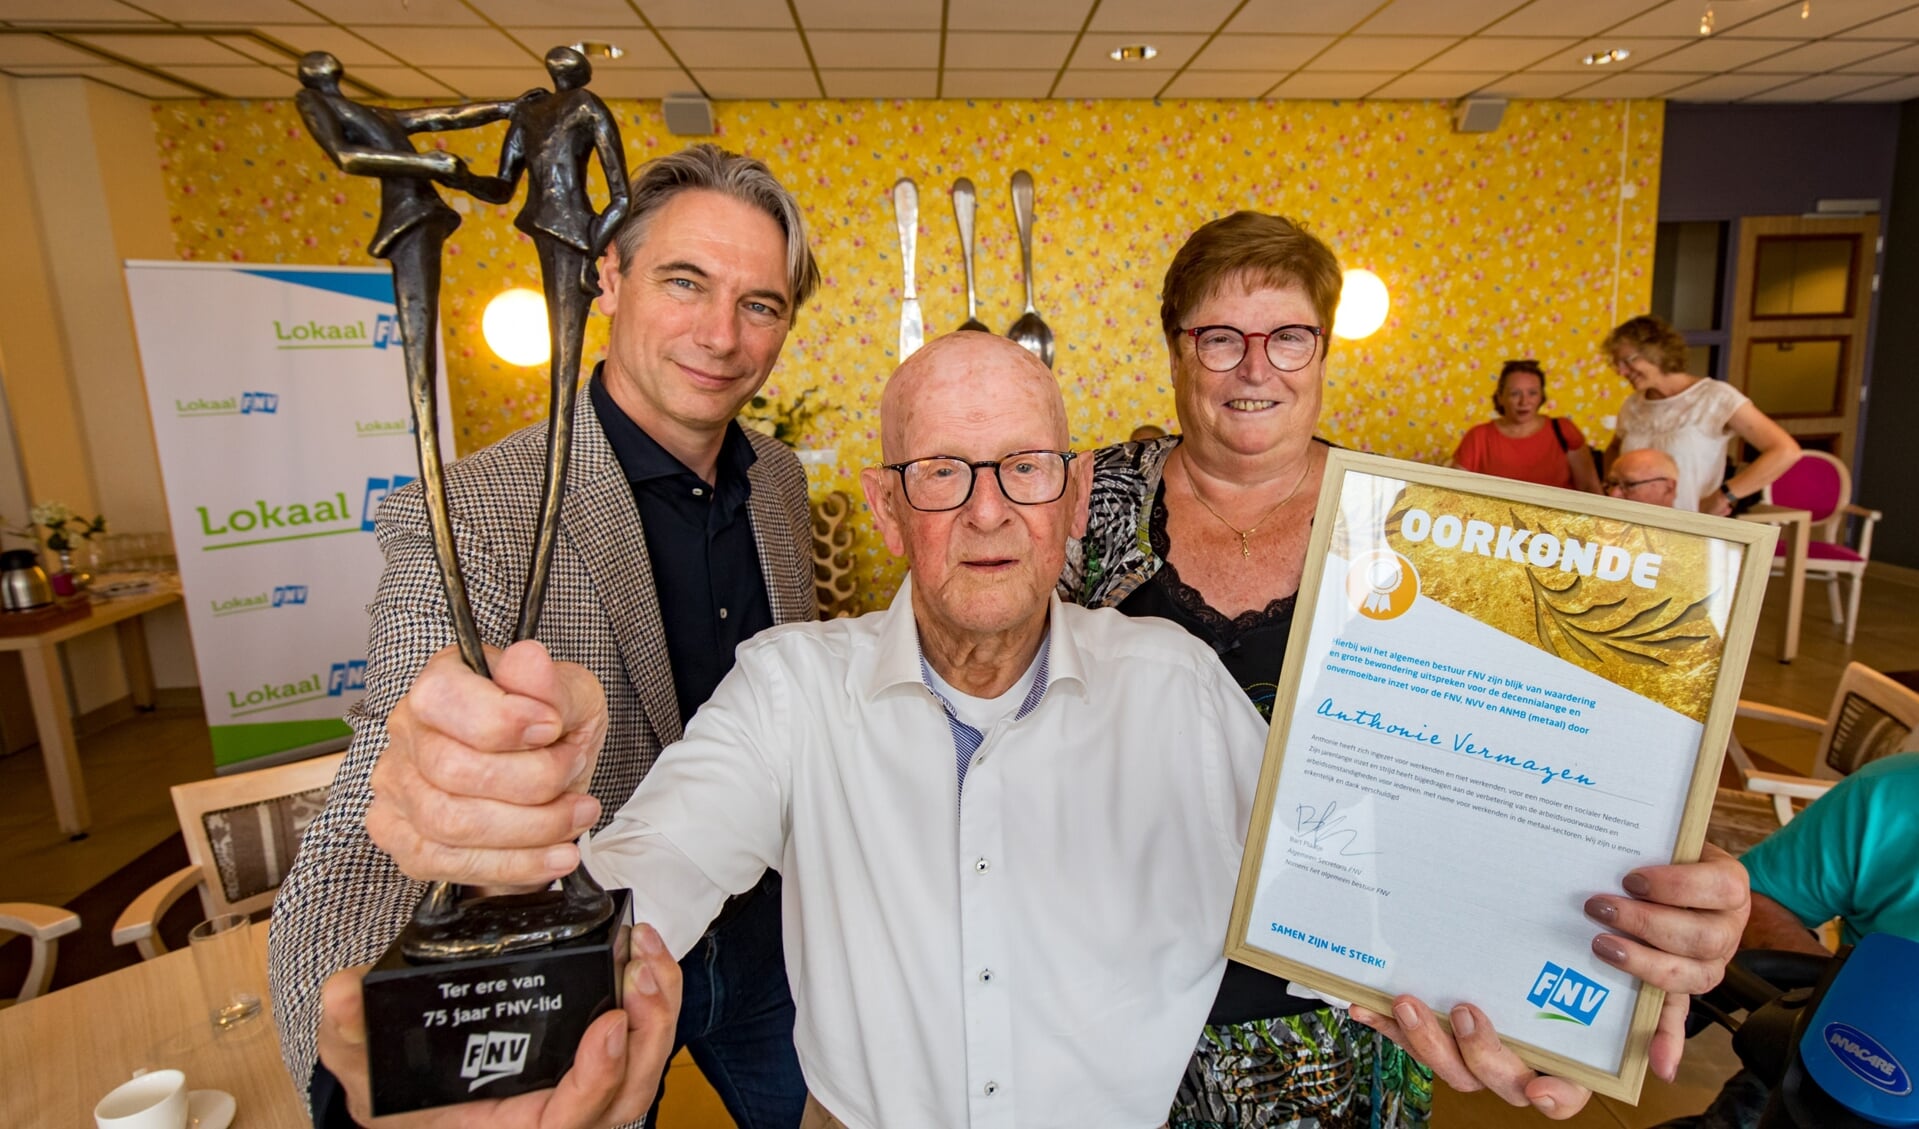 Anthon Vermazen, 100 jaar oud en al 84 jaar lid van het FNV, hier samen met zijn vrouw, Truus Vermeulen en de voorzitter van de FNV. 